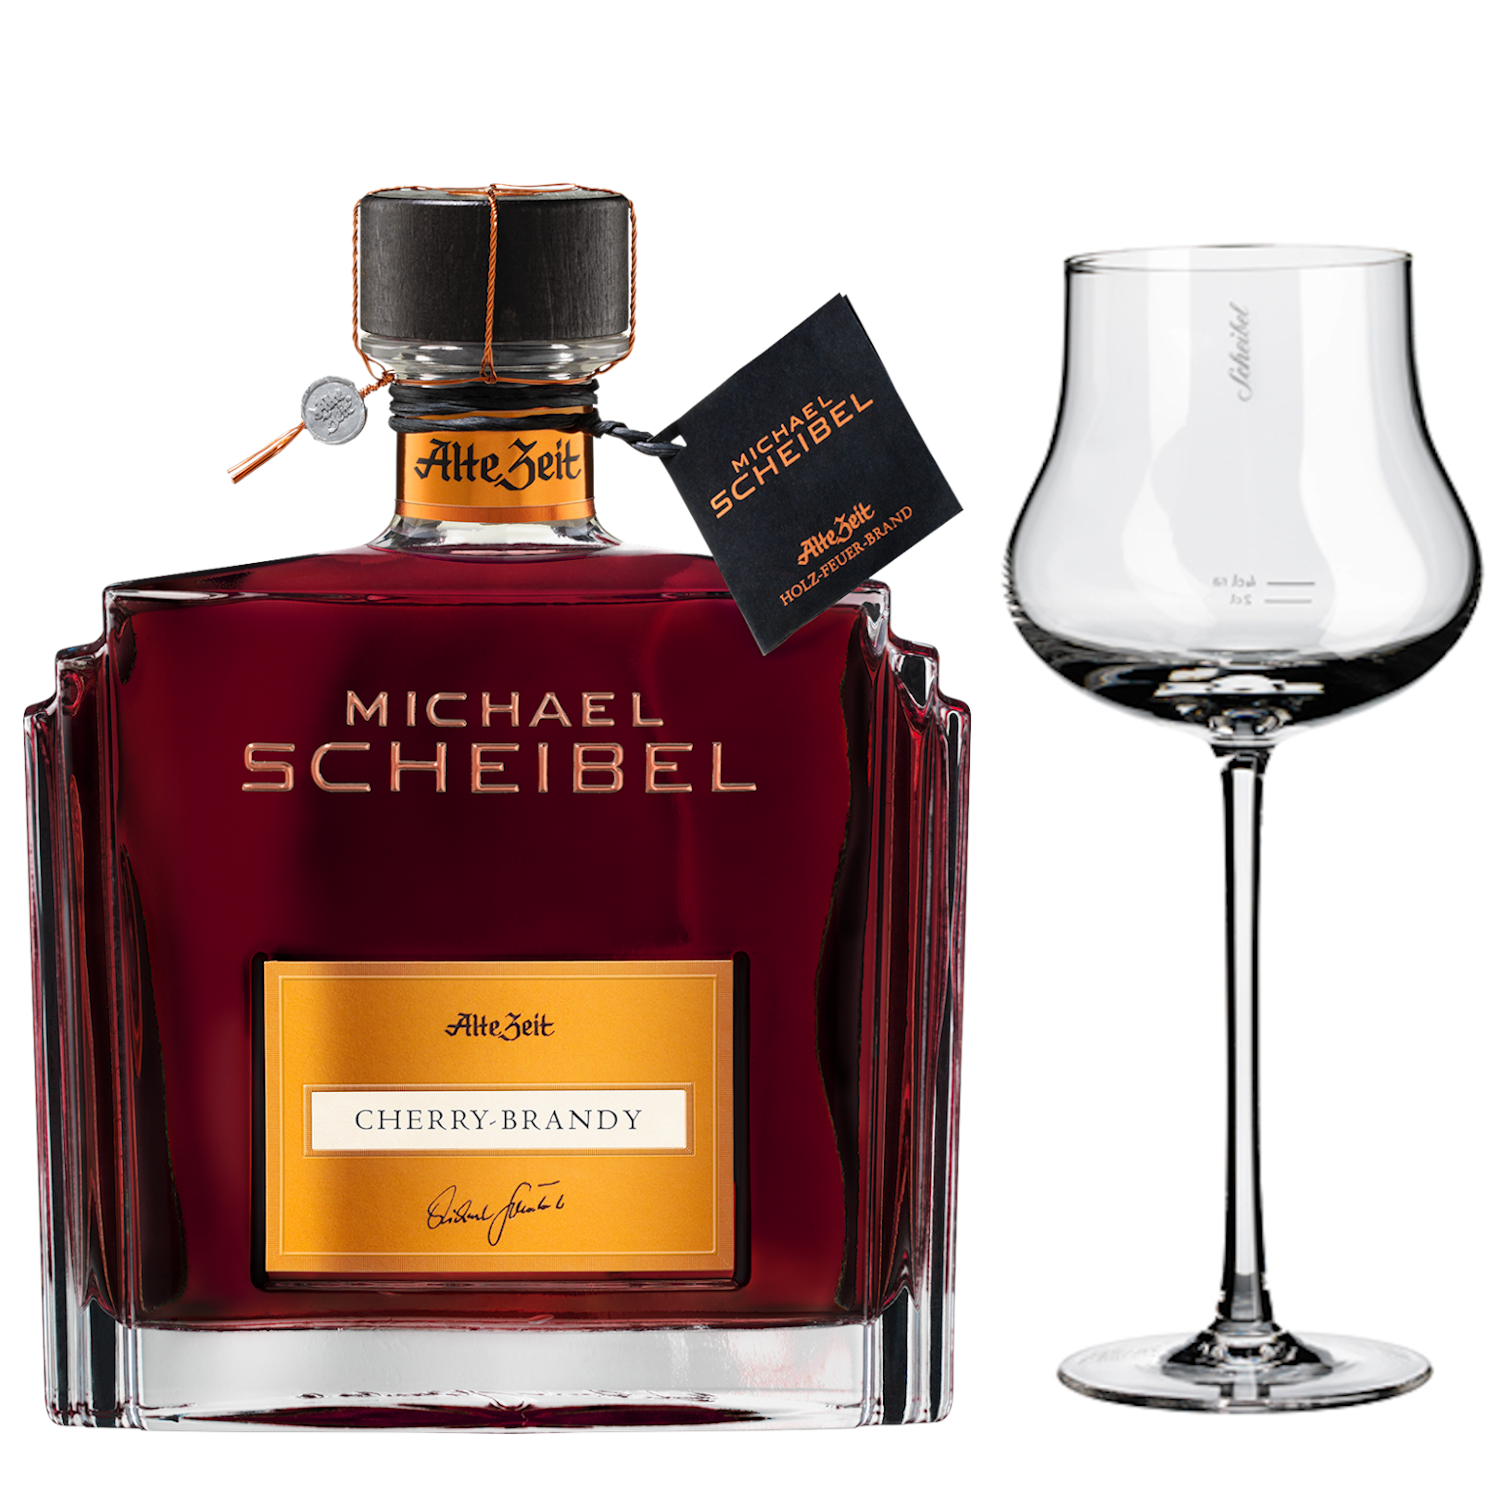 Scheibel Cherry-Brandy Alte Zeit 35% Vol.